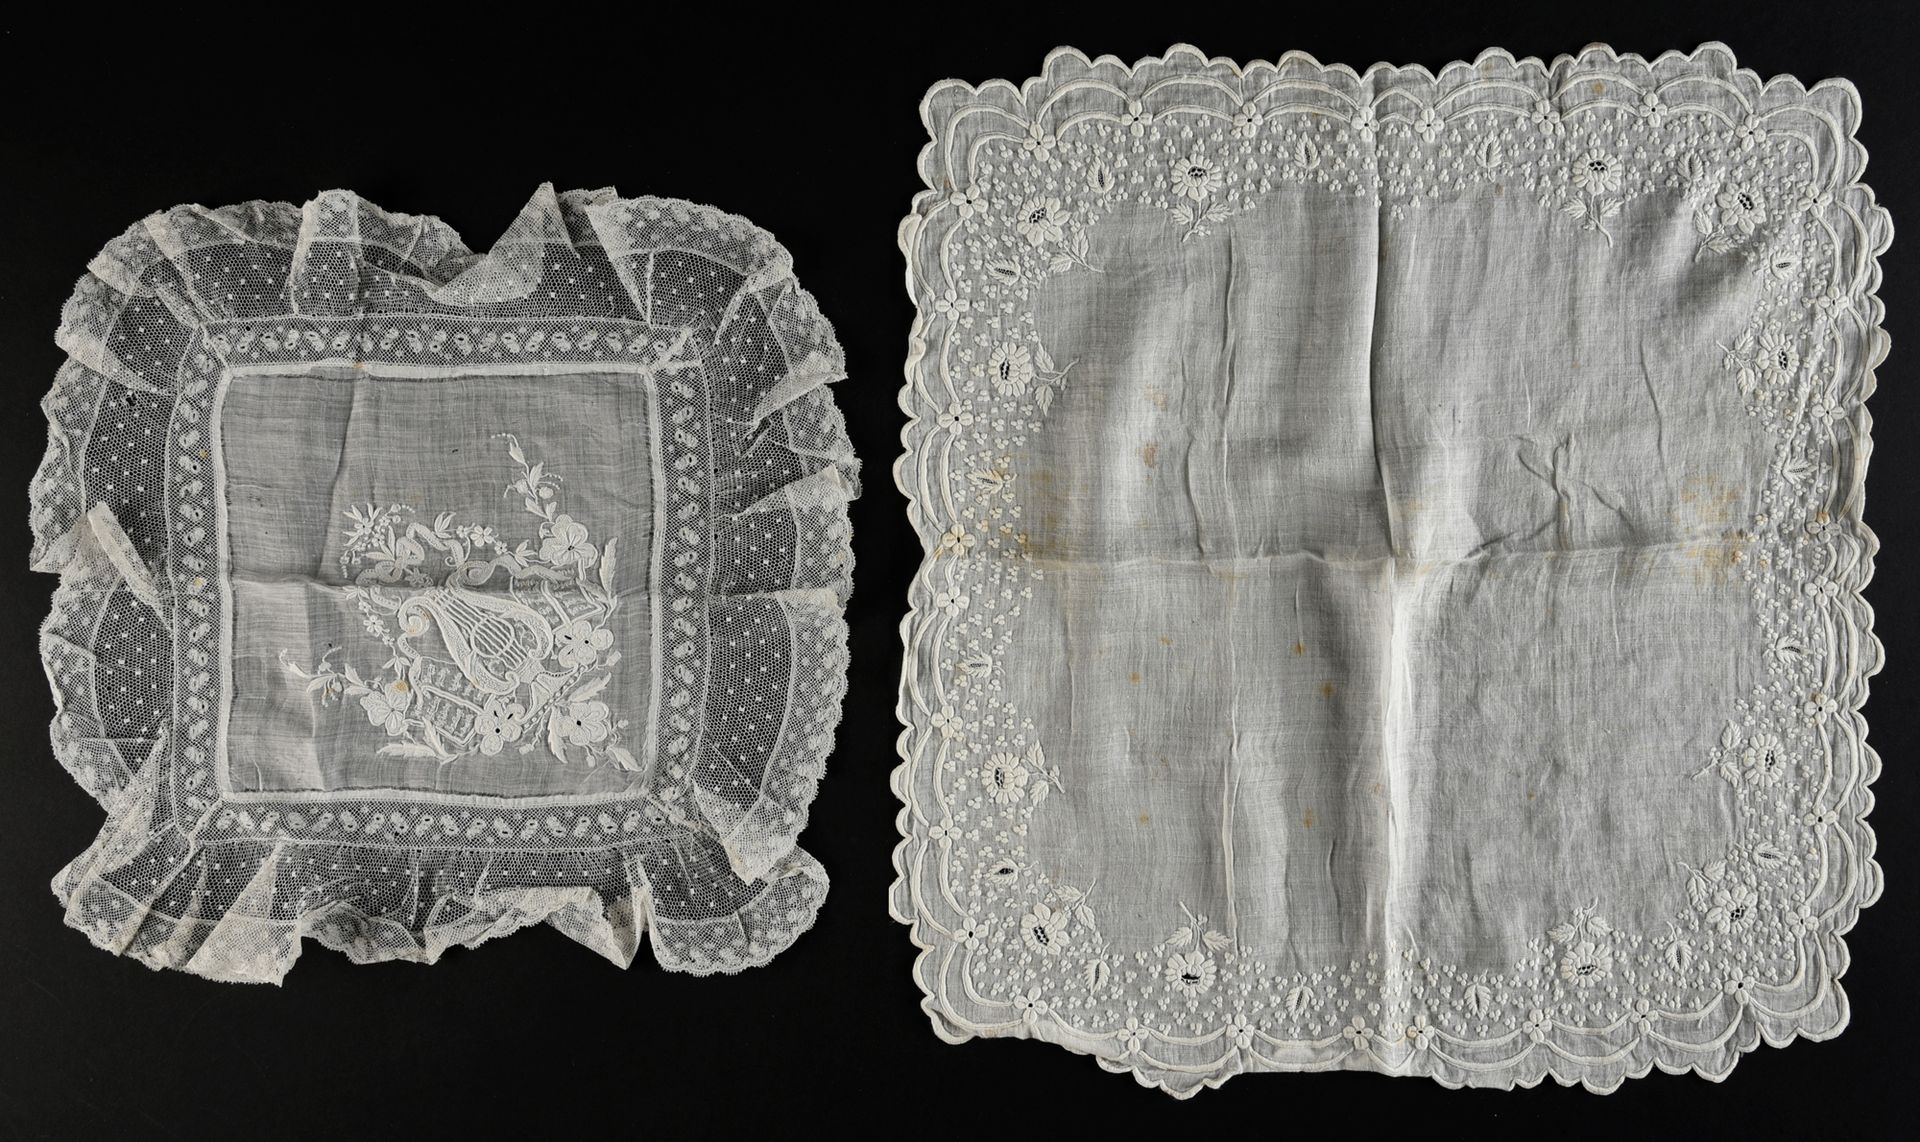 Null 一块刺绣的亚麻布手帕和桌巾，19世纪中期。

一块绣有精致花朵和扇形边缘的精美手帕（有零星污渍）和一块绣有三色堇和音乐寓言的手帕，用梅花针和沙针精细绣&hellip;